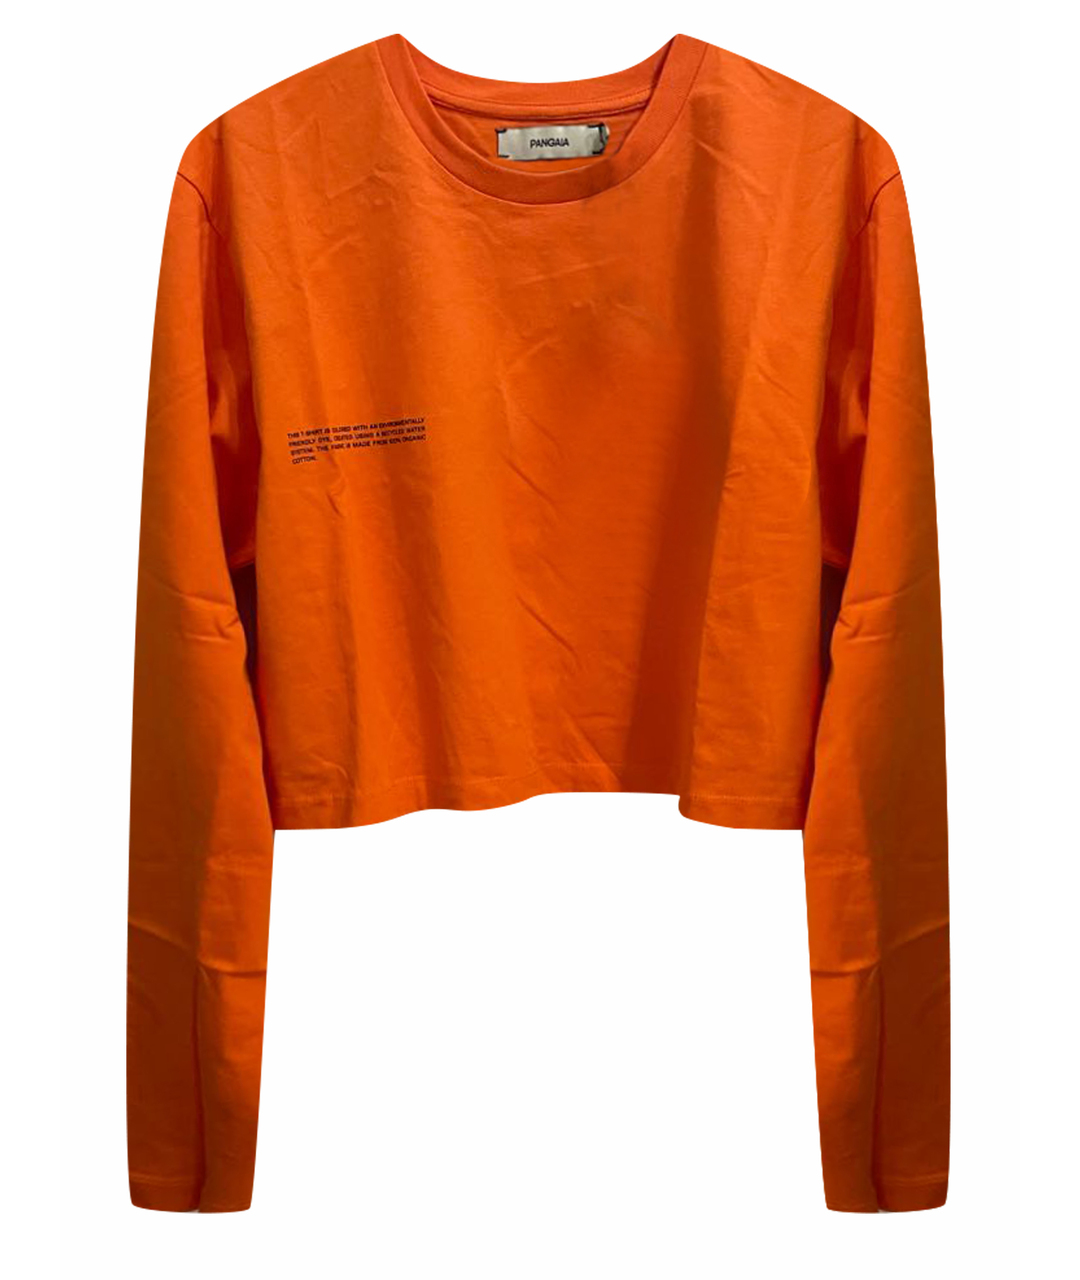 THE PANGAIA Оранжевый хлопковый джемпер / свитер, фото 1